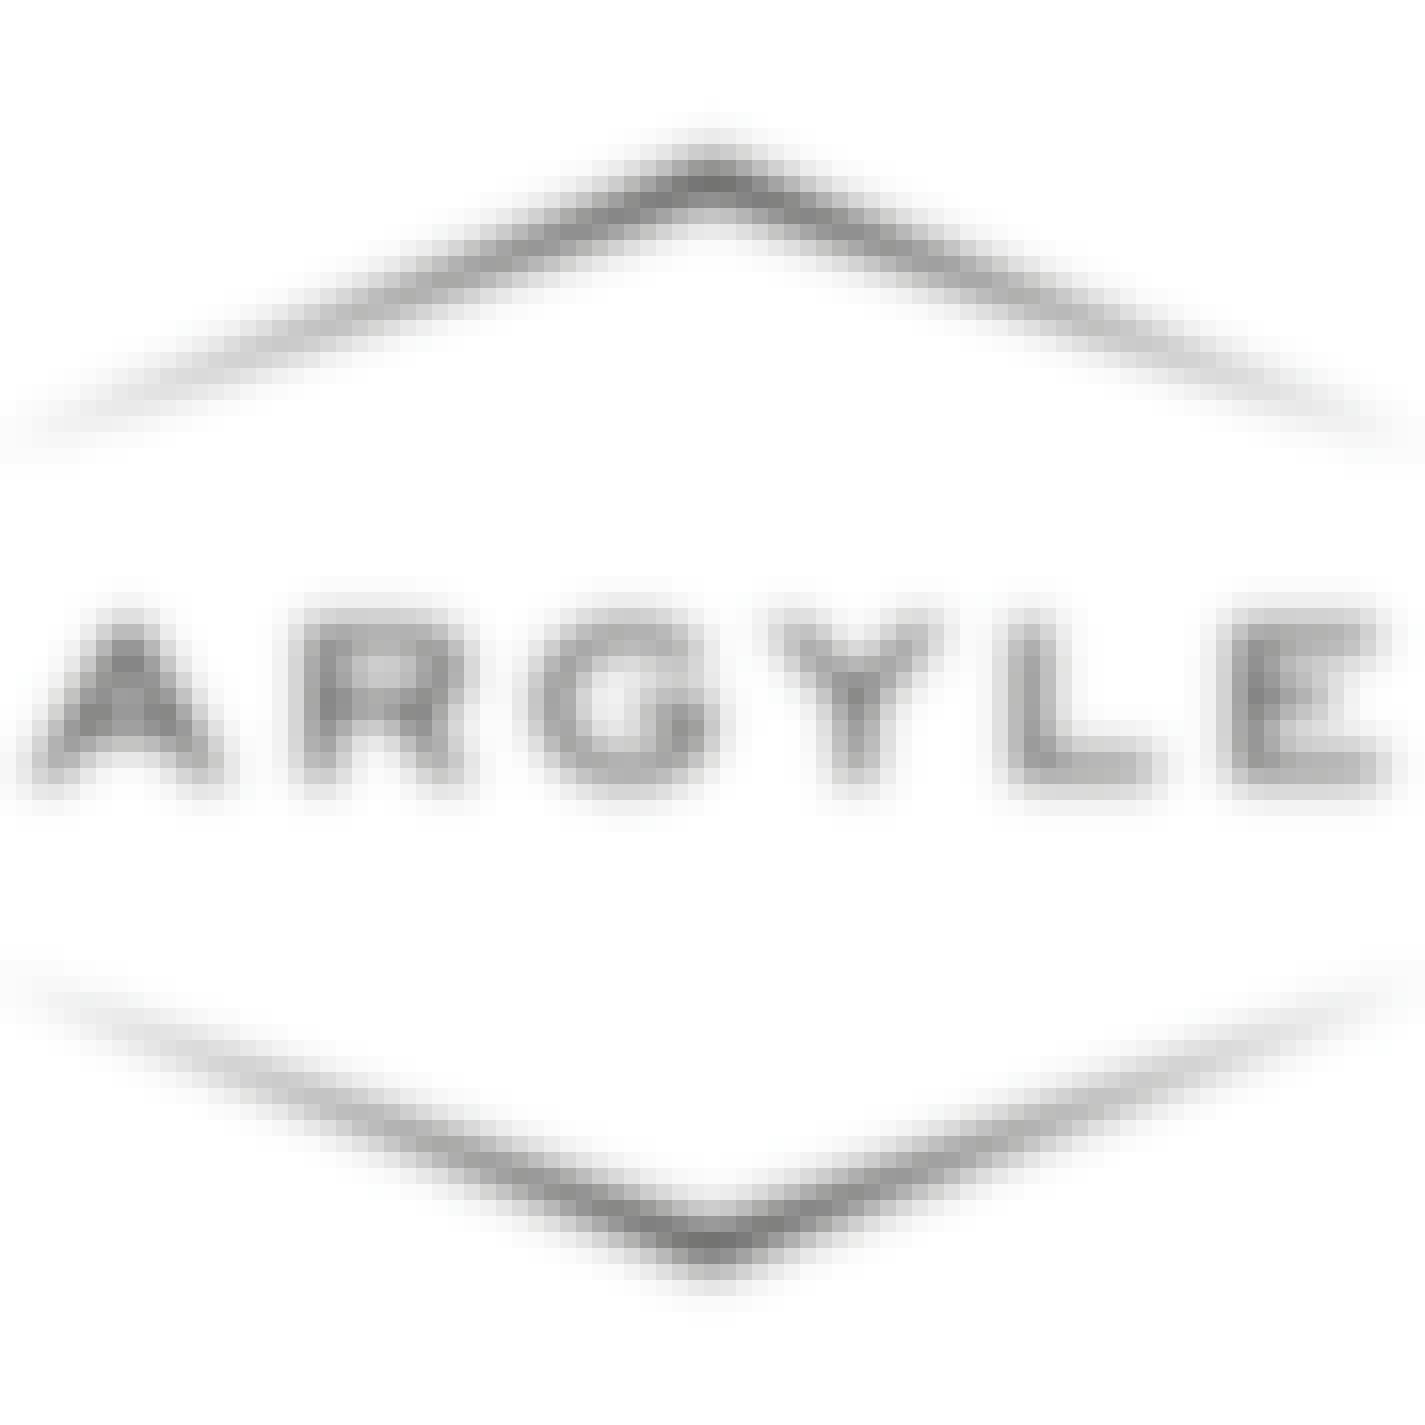 Argyle Willamette Valley Chardonnay 750ml